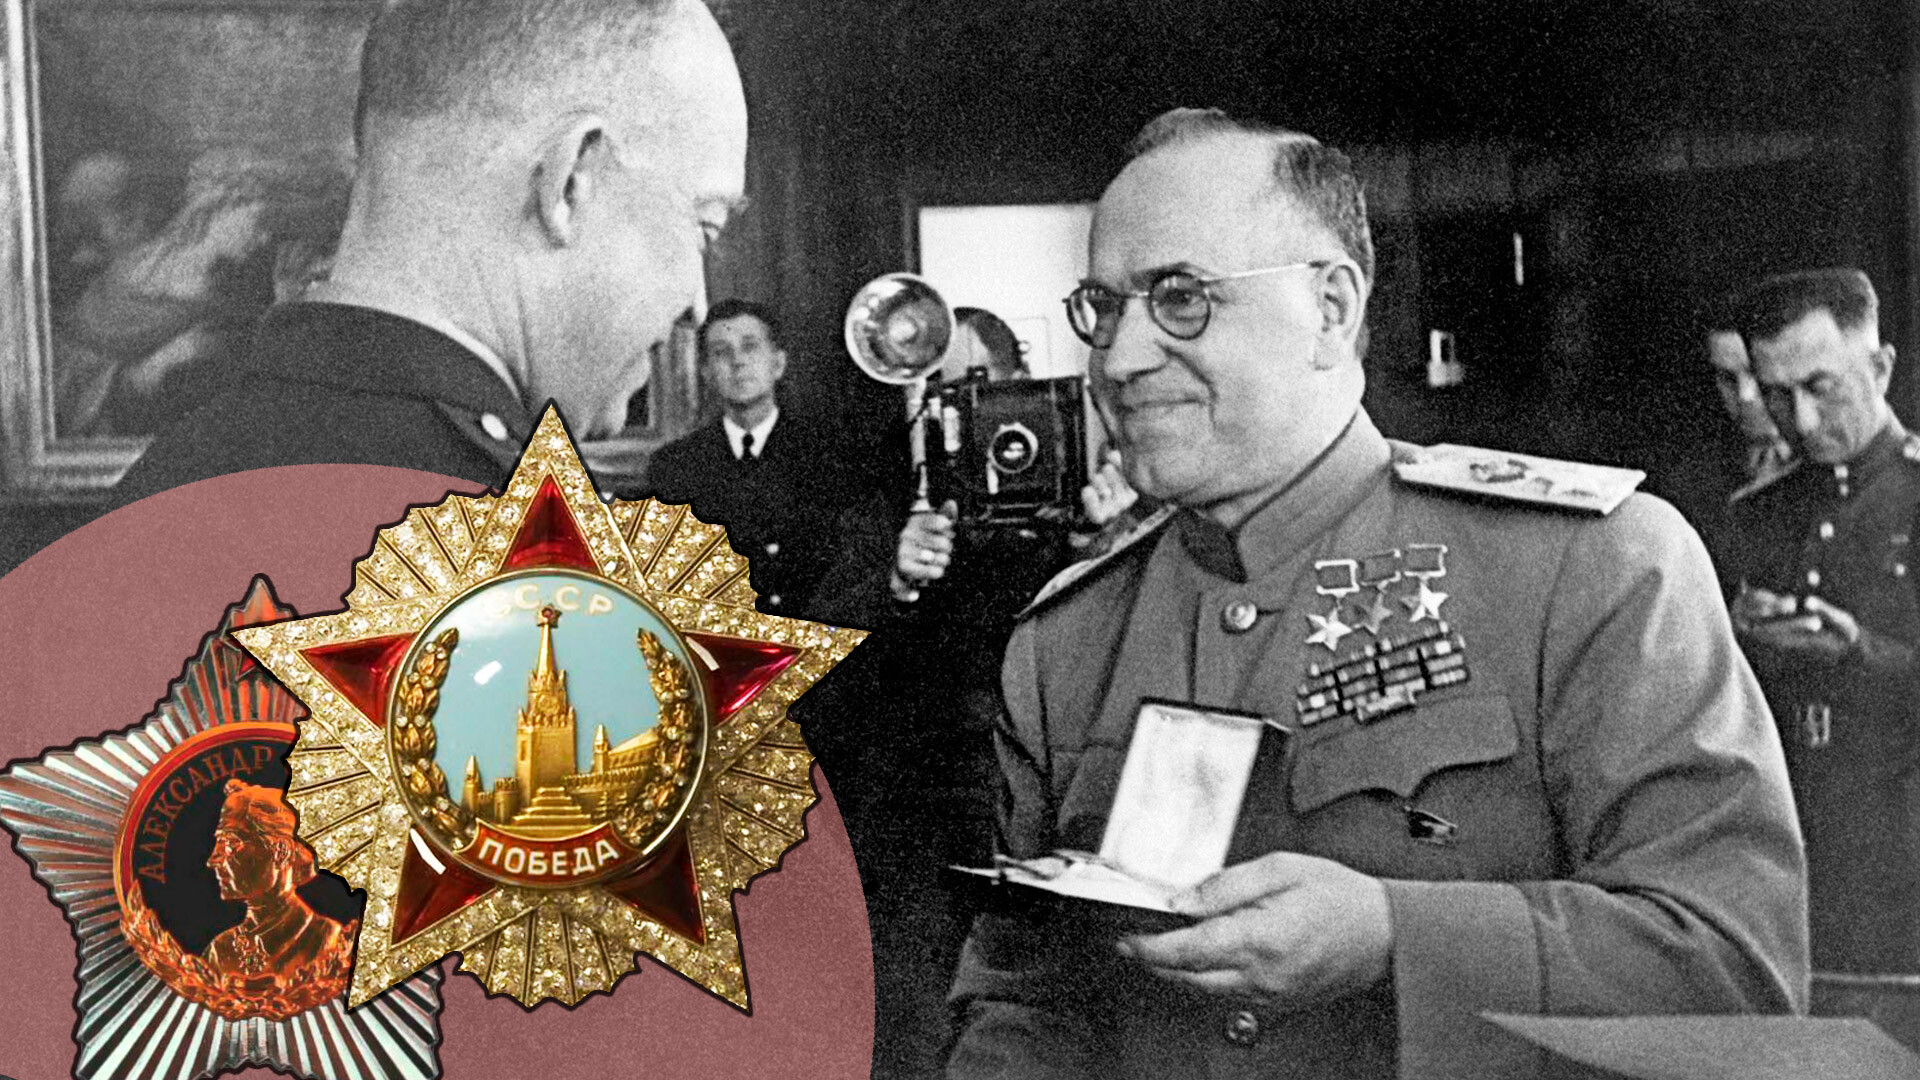 Маршал Георгиј Жуков уручује Орден Победе генералу америчке војске Двајту Ајзенхауеру, јун 1945.